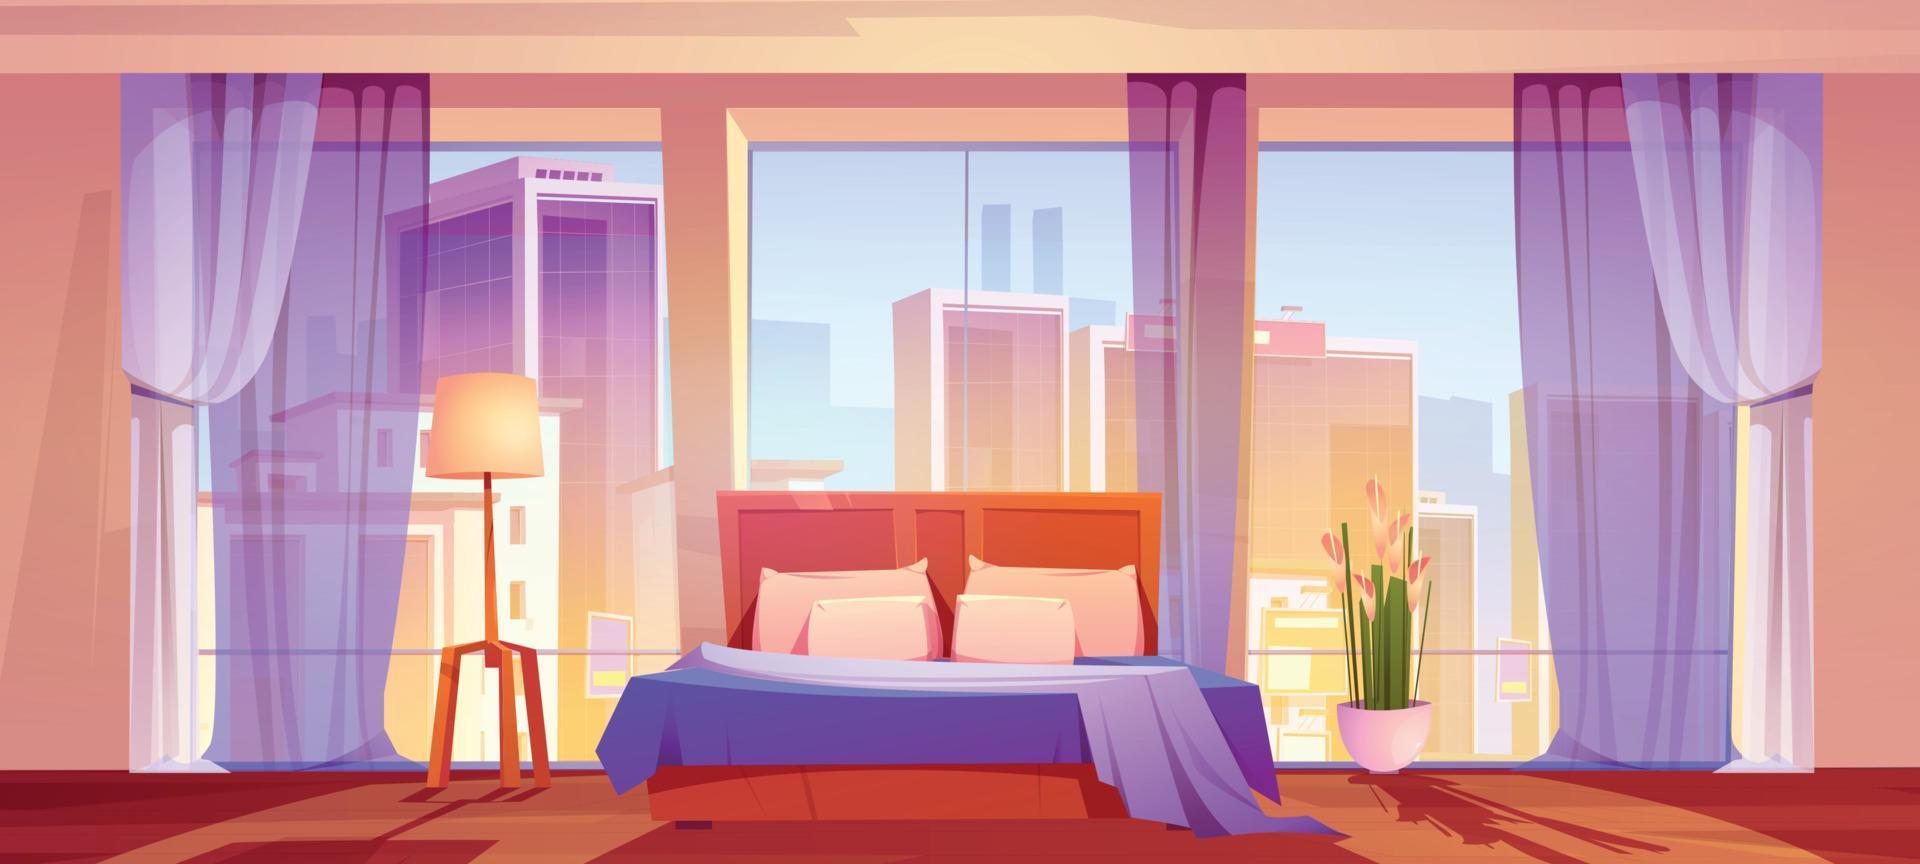 dormitorio con vista a la ciudad, interior del hogar o del hotel vector